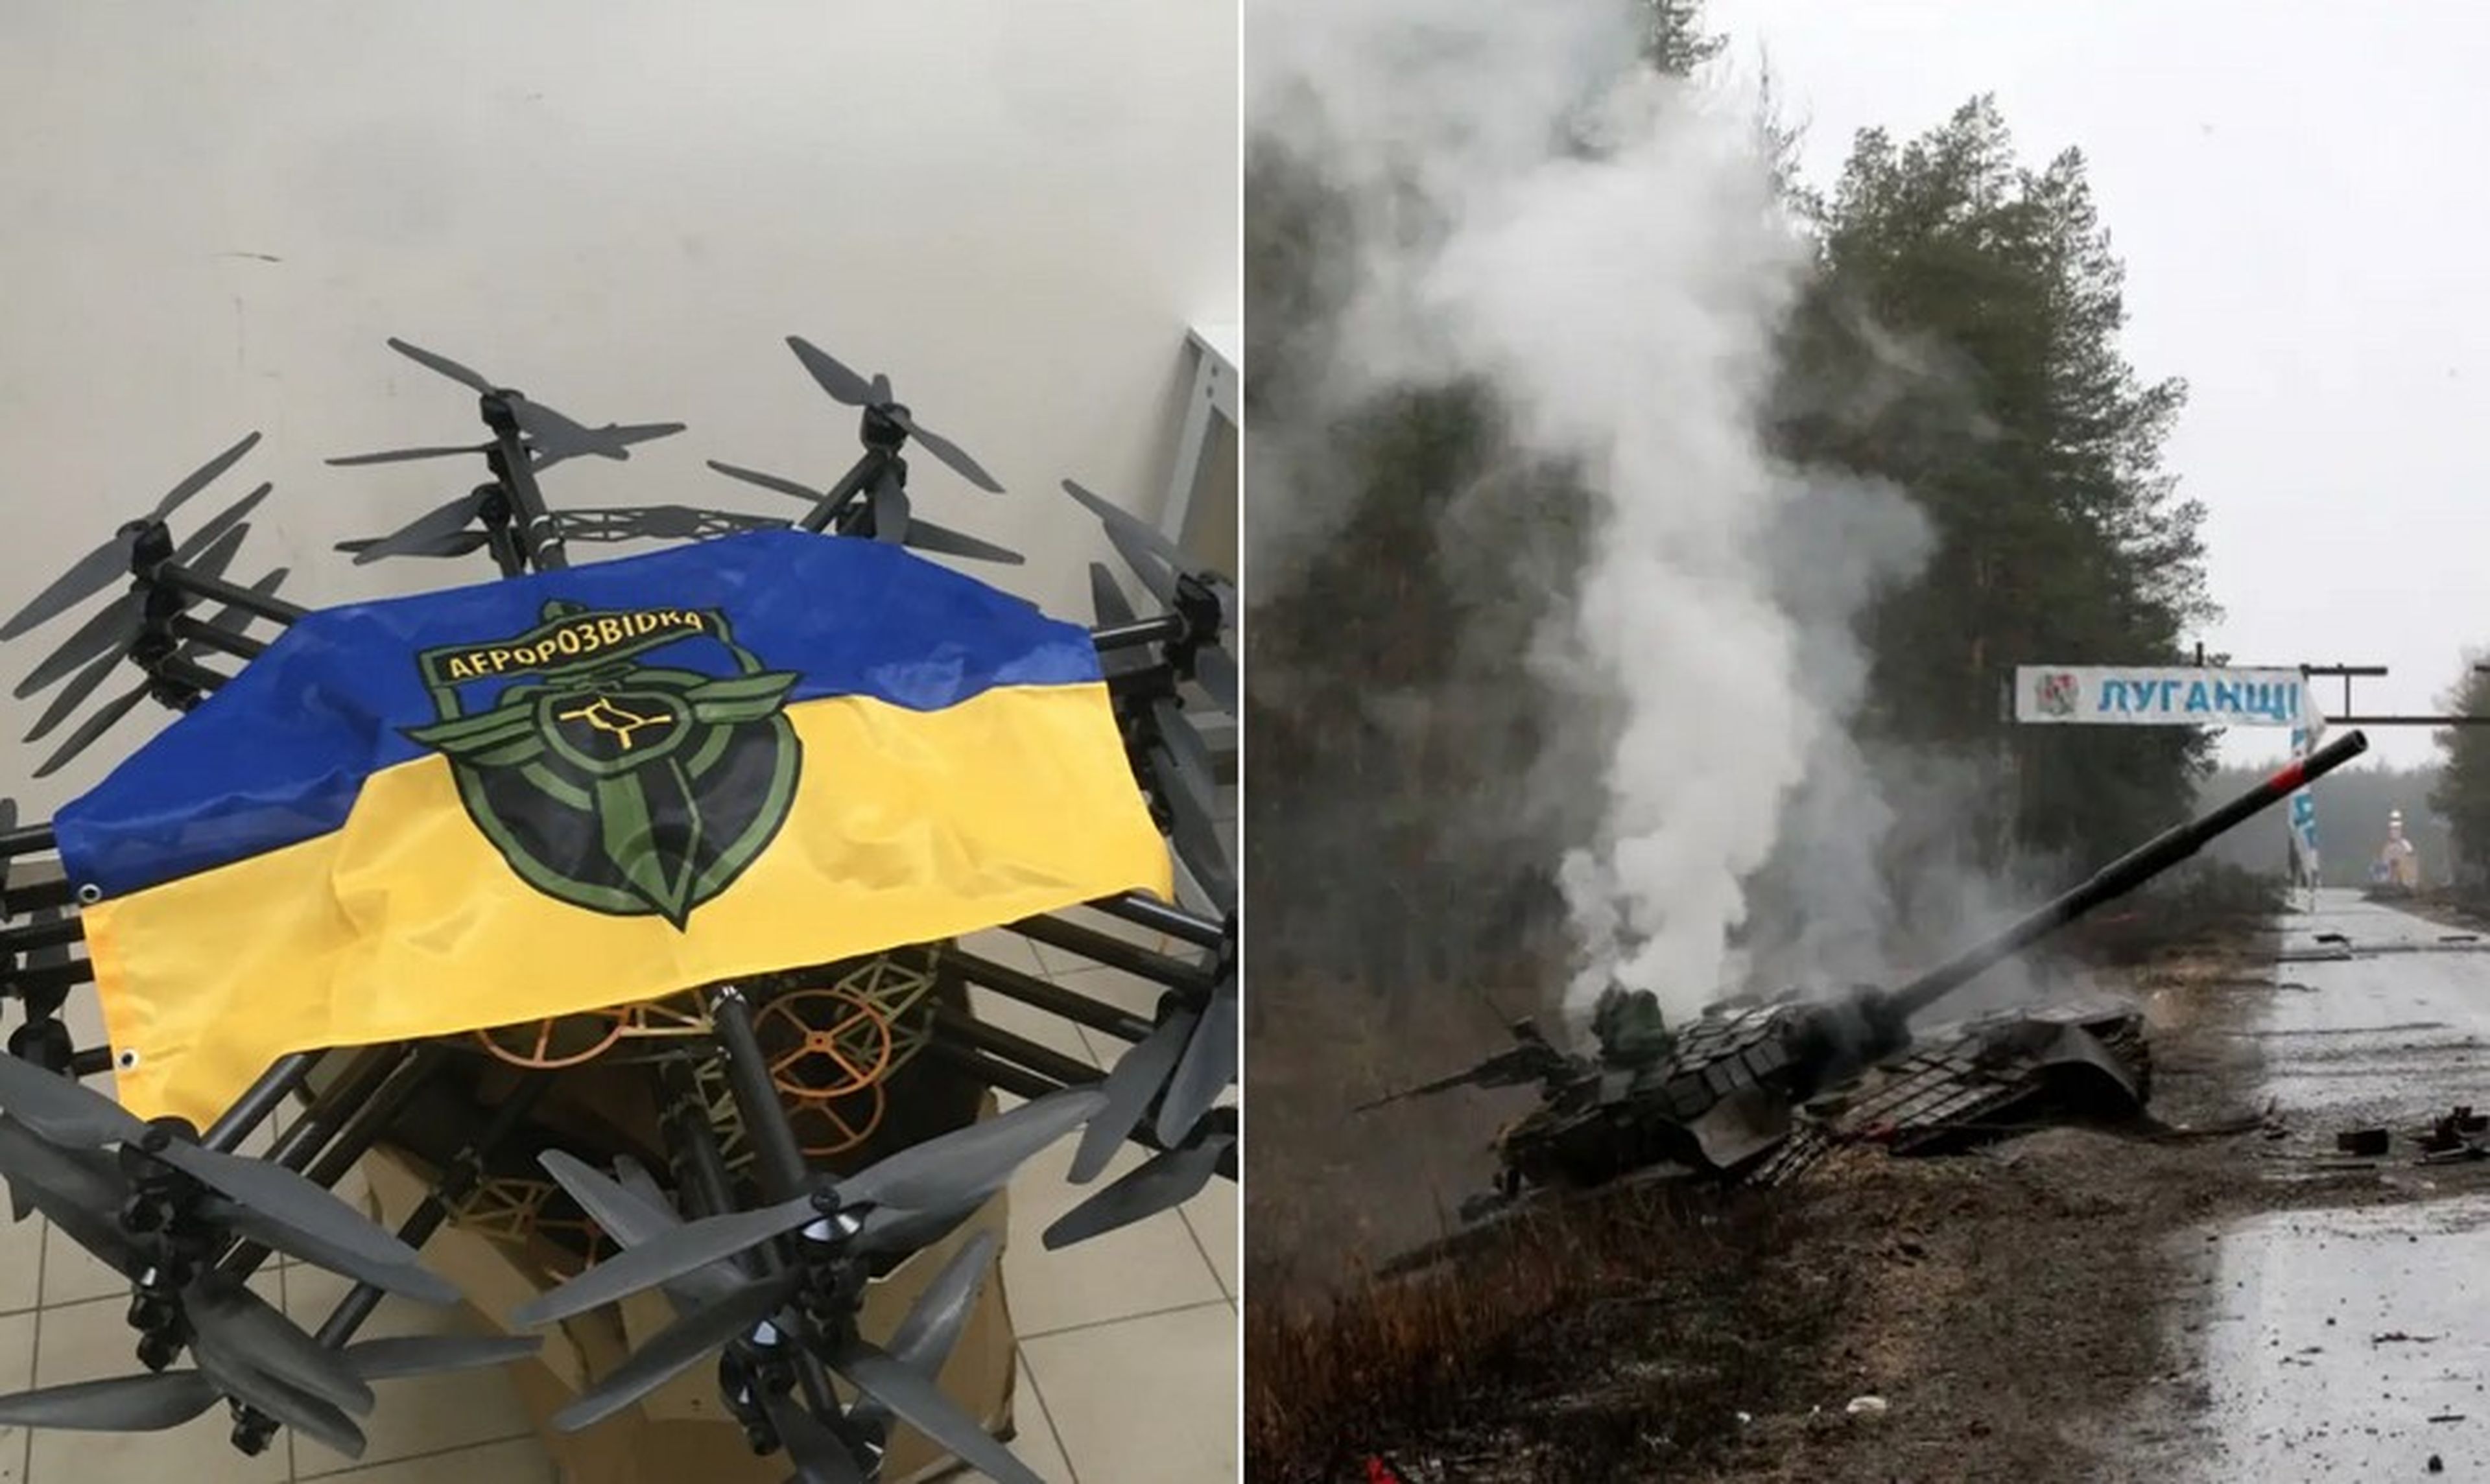 El dron R-18 de Aerorozvidka, a la izquierda, fue capaz de destruir un tanque ruso, a la derecha.